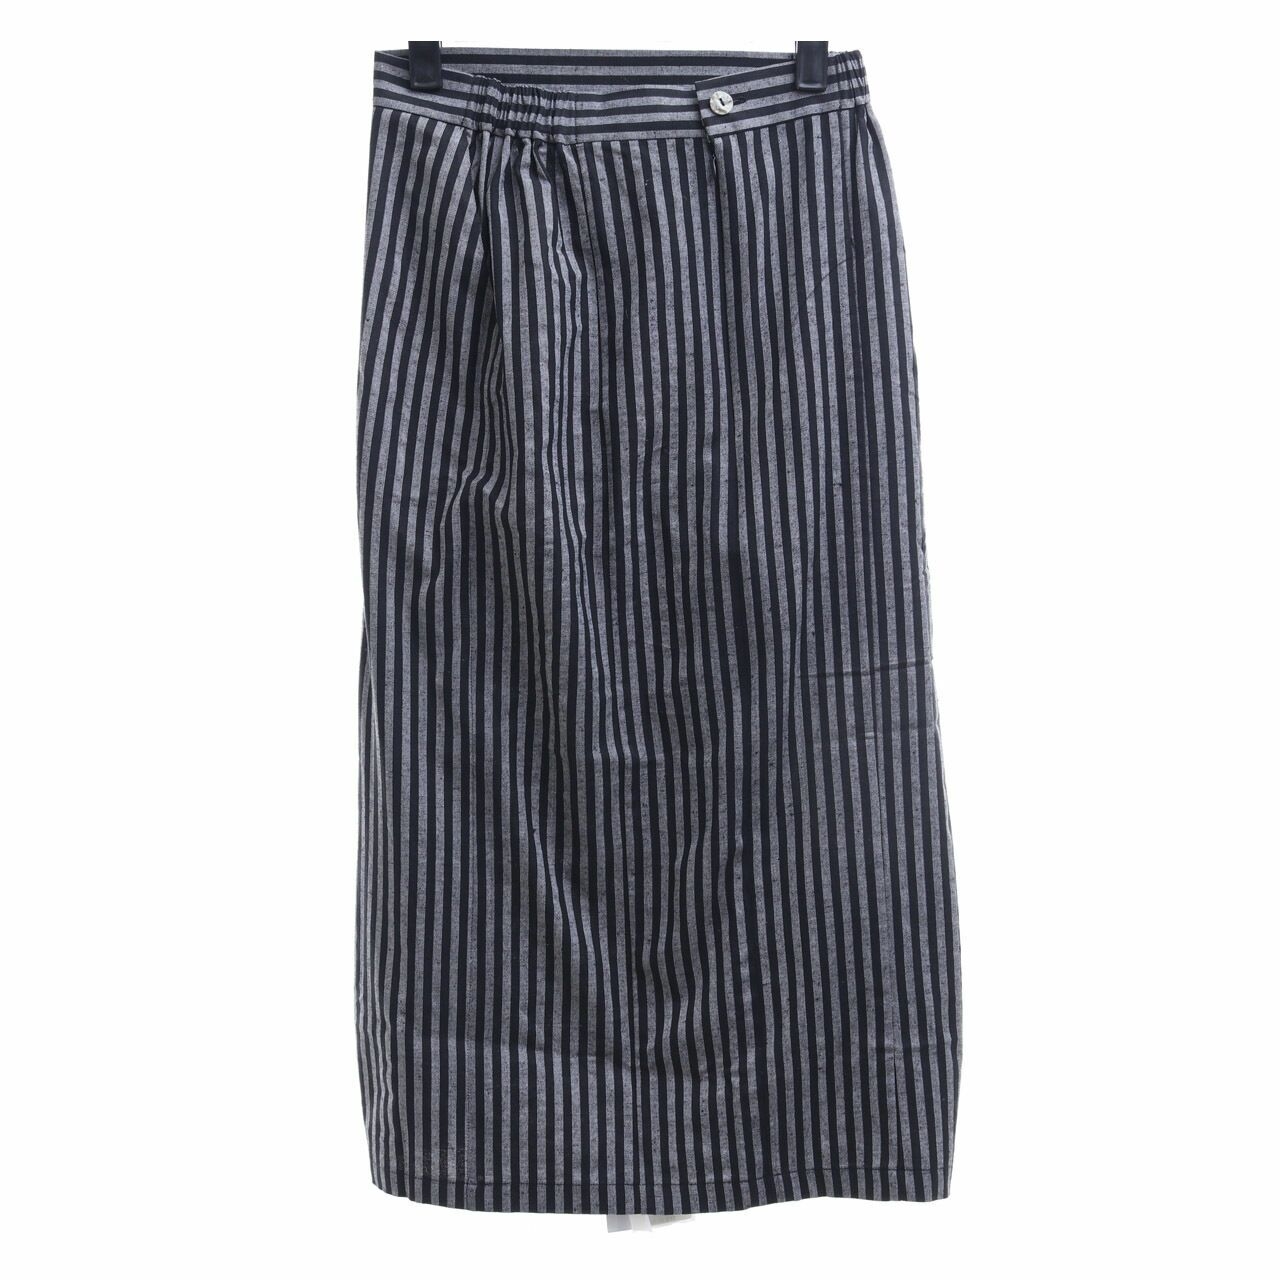 Imaji Studio Grey & Black Striped Midi Skirt